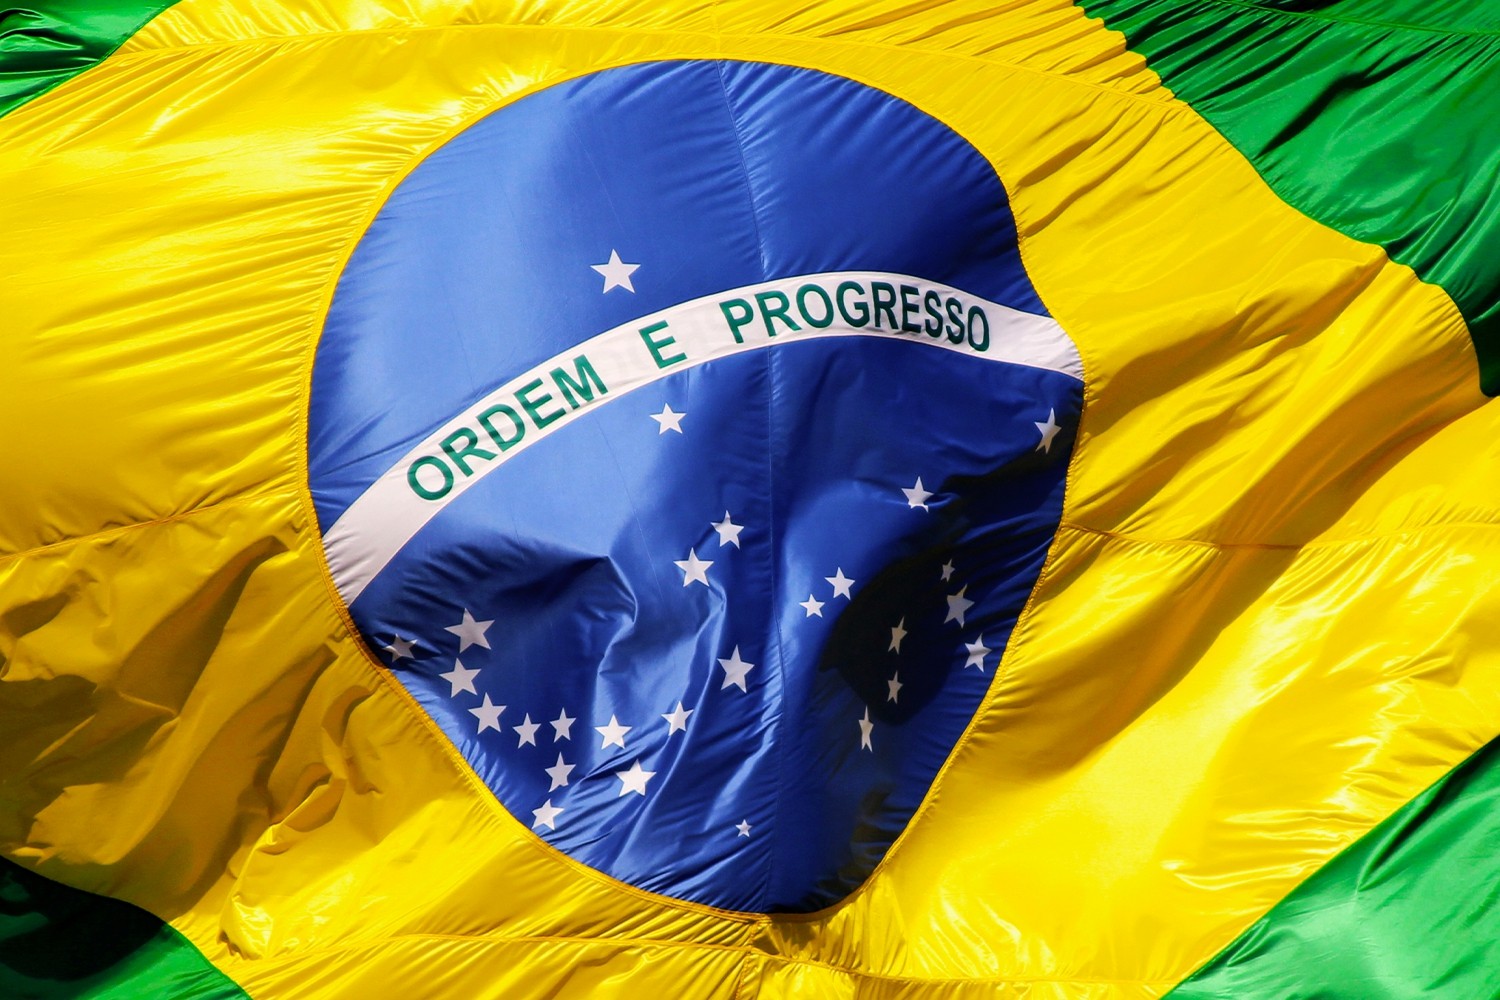 OFICJALNIE: Nowy selekcjoner reprezentacji Brazylii. Ale tylko tymczasowo...